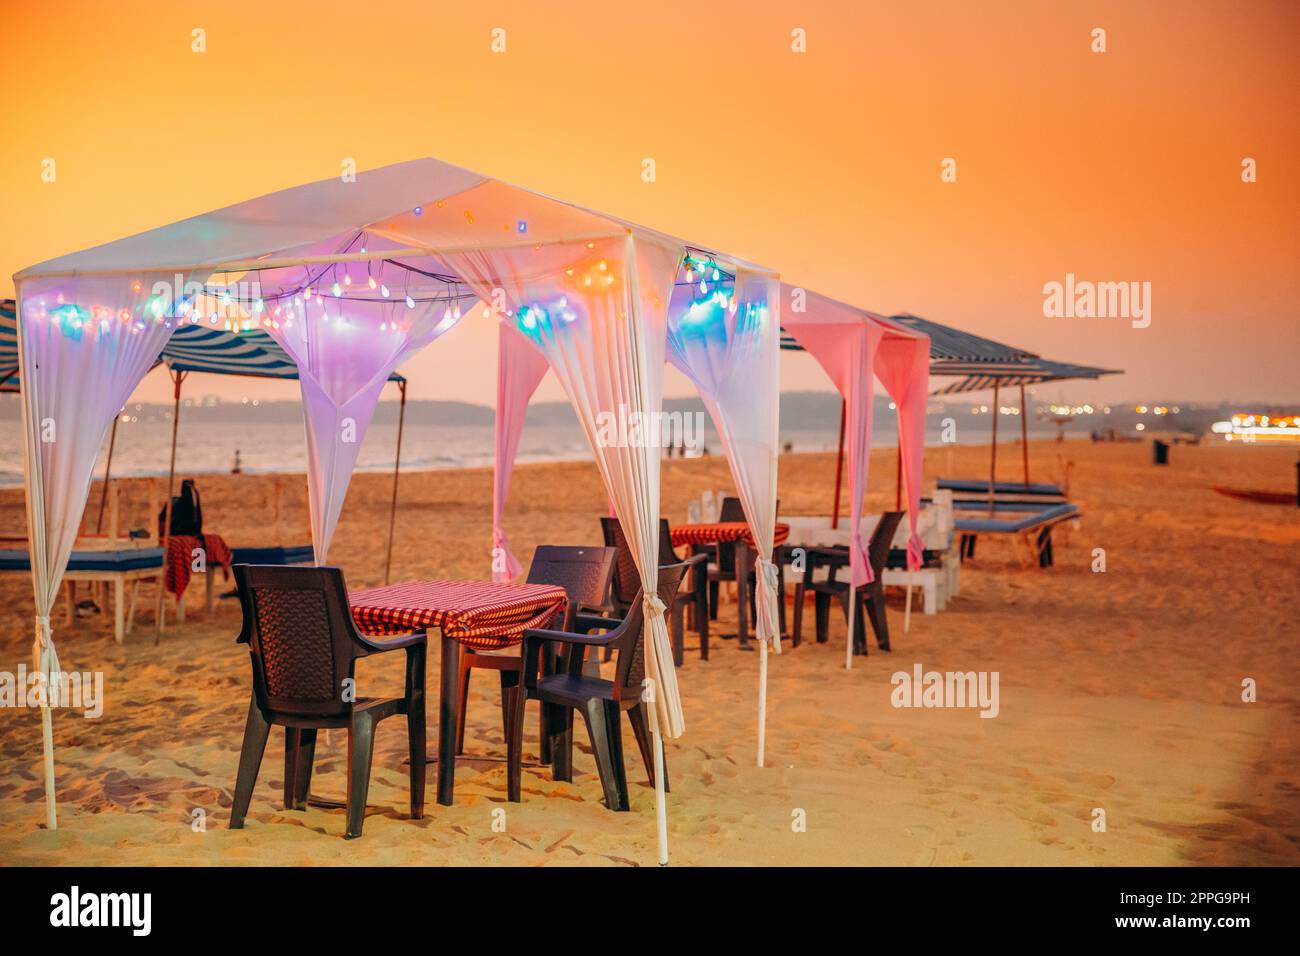 Goa, Inde. Tentes gazebo avec lampe pour les touristes sur la plage avec tables et chaises à l'intérieur au coucher du soleil Banque D'Images